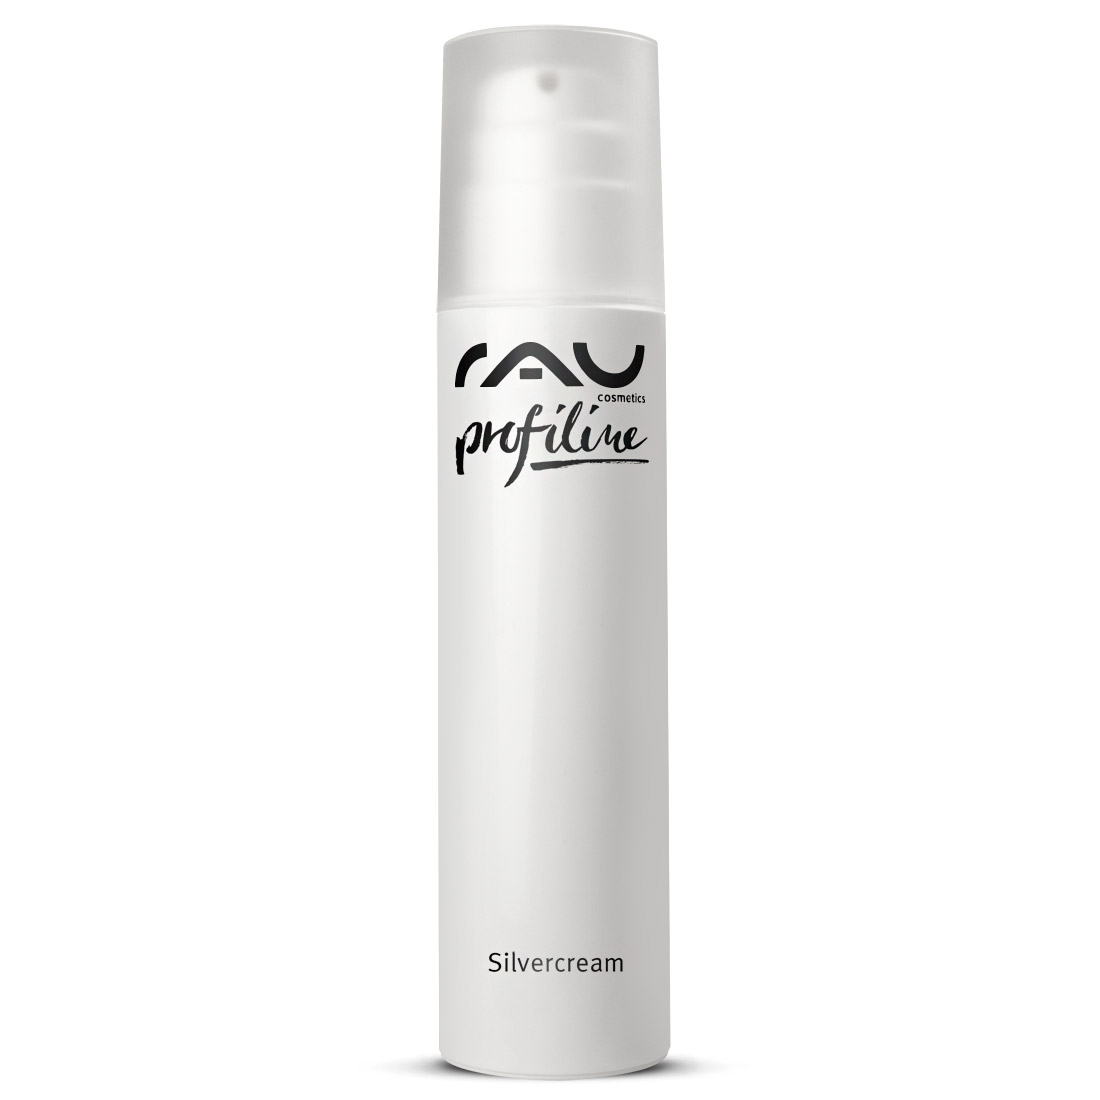 RAU Silvercream 200 ml PROFILINE - Kabinenware - Spezialcreme für unreine Haut mit Microsilber, Zink